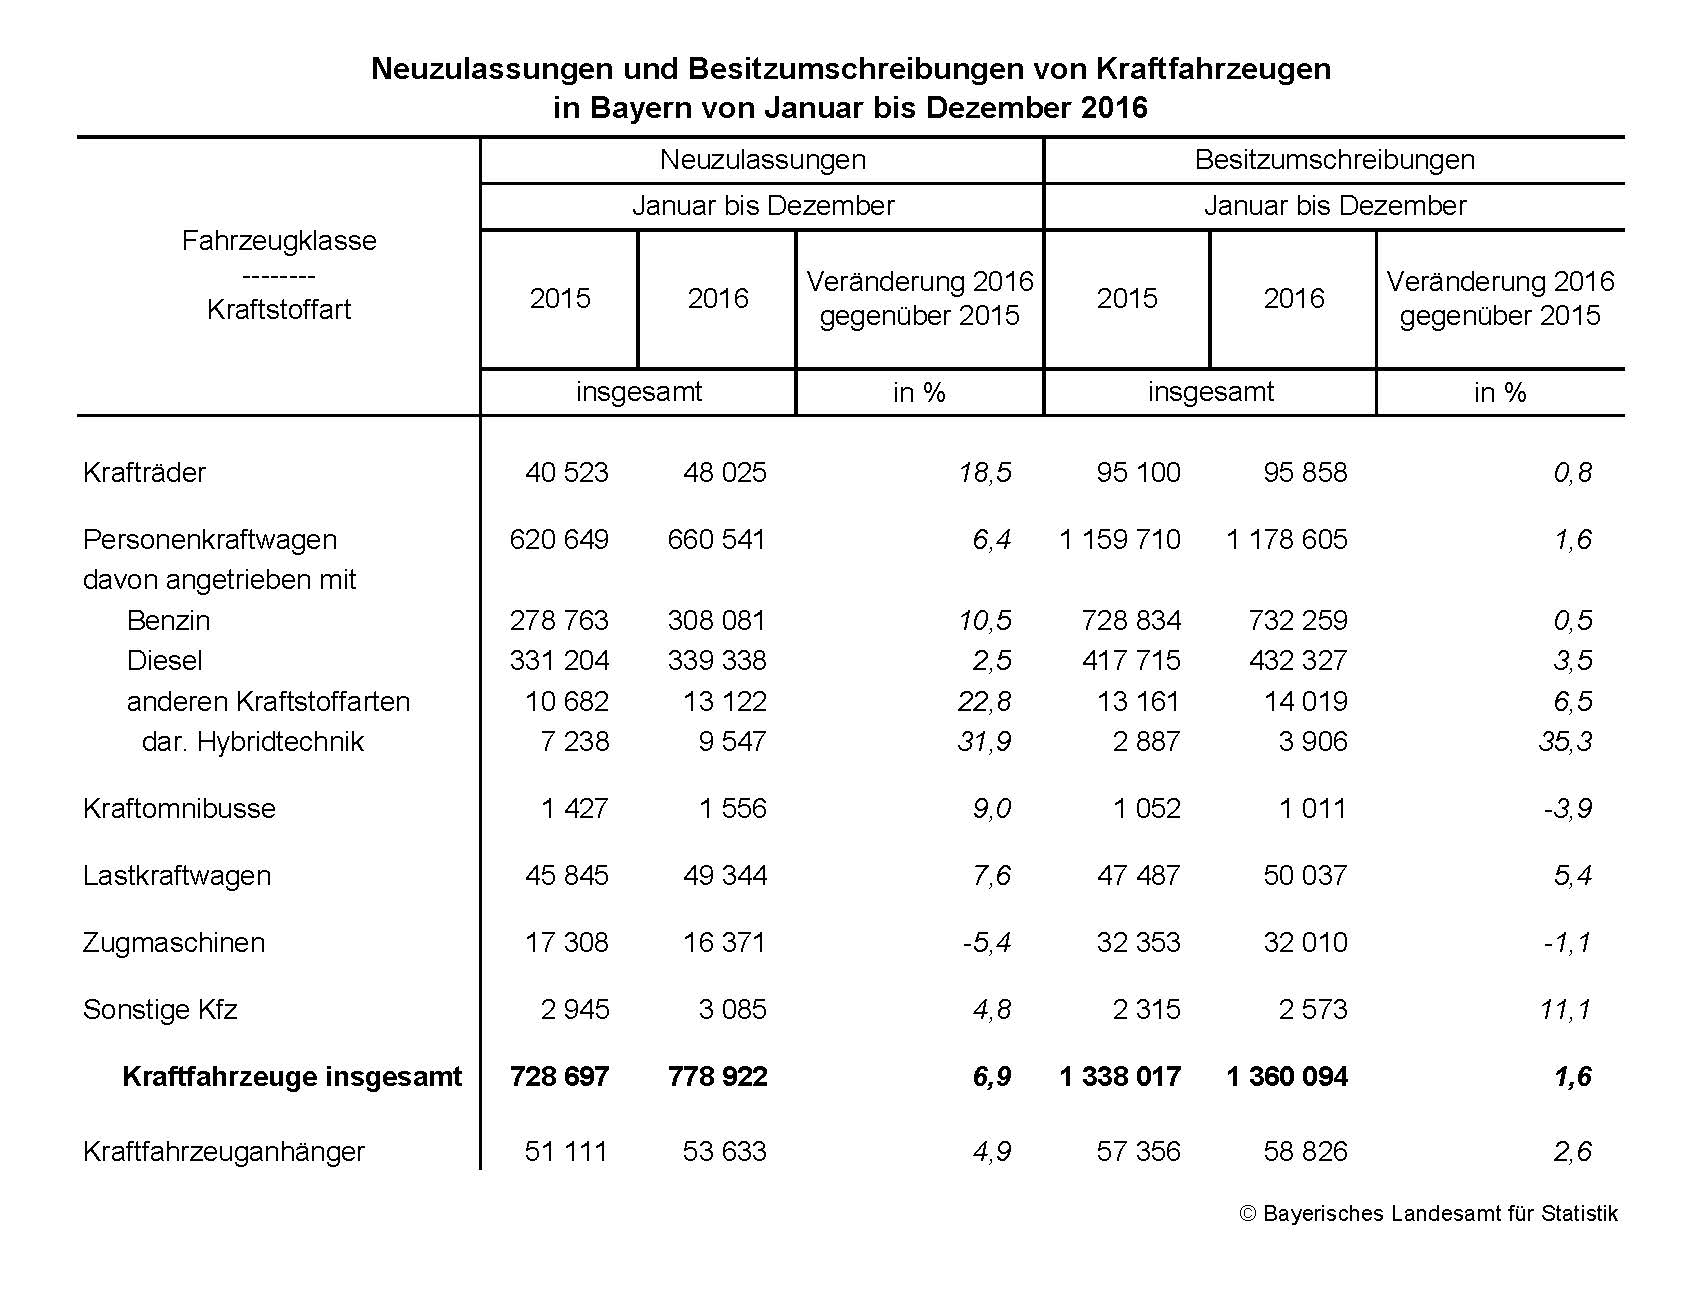 Neuzulassungen ud Besitzumschreibungen von Kraftfahrzeugen in Bayern von Januar bis Dezember 2016